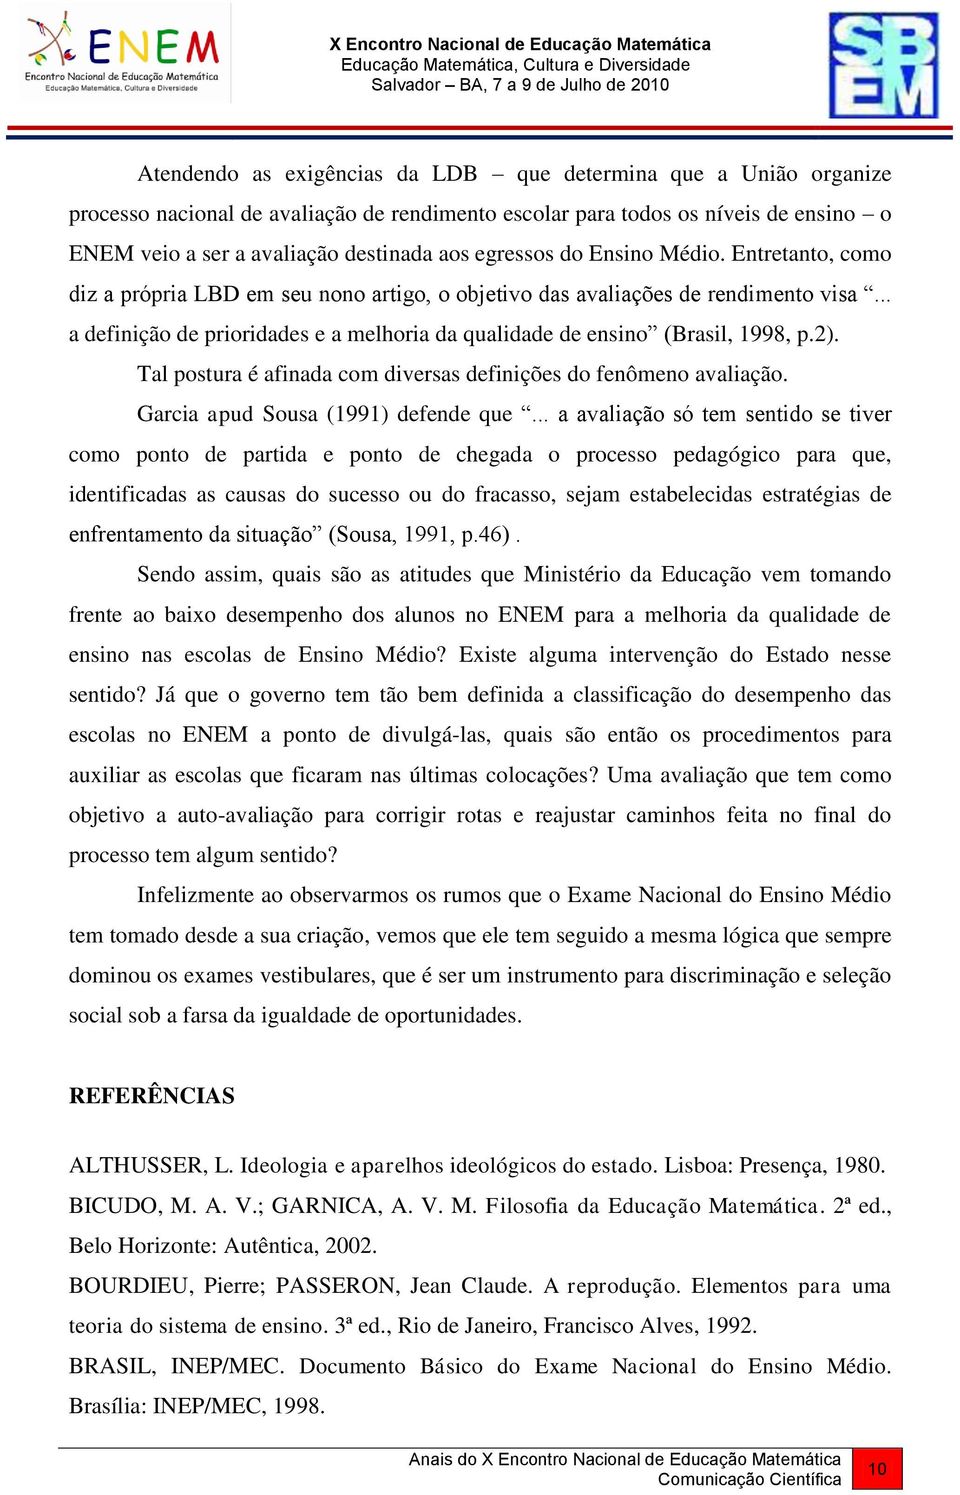 .. a definição de prioridades e a melhoria da qualidade de ensino (Brasil, 1998, p.2). Tal postura é afinada com diversas definições do fenômeno avaliação. Garcia apud Sousa (1991) defende que.